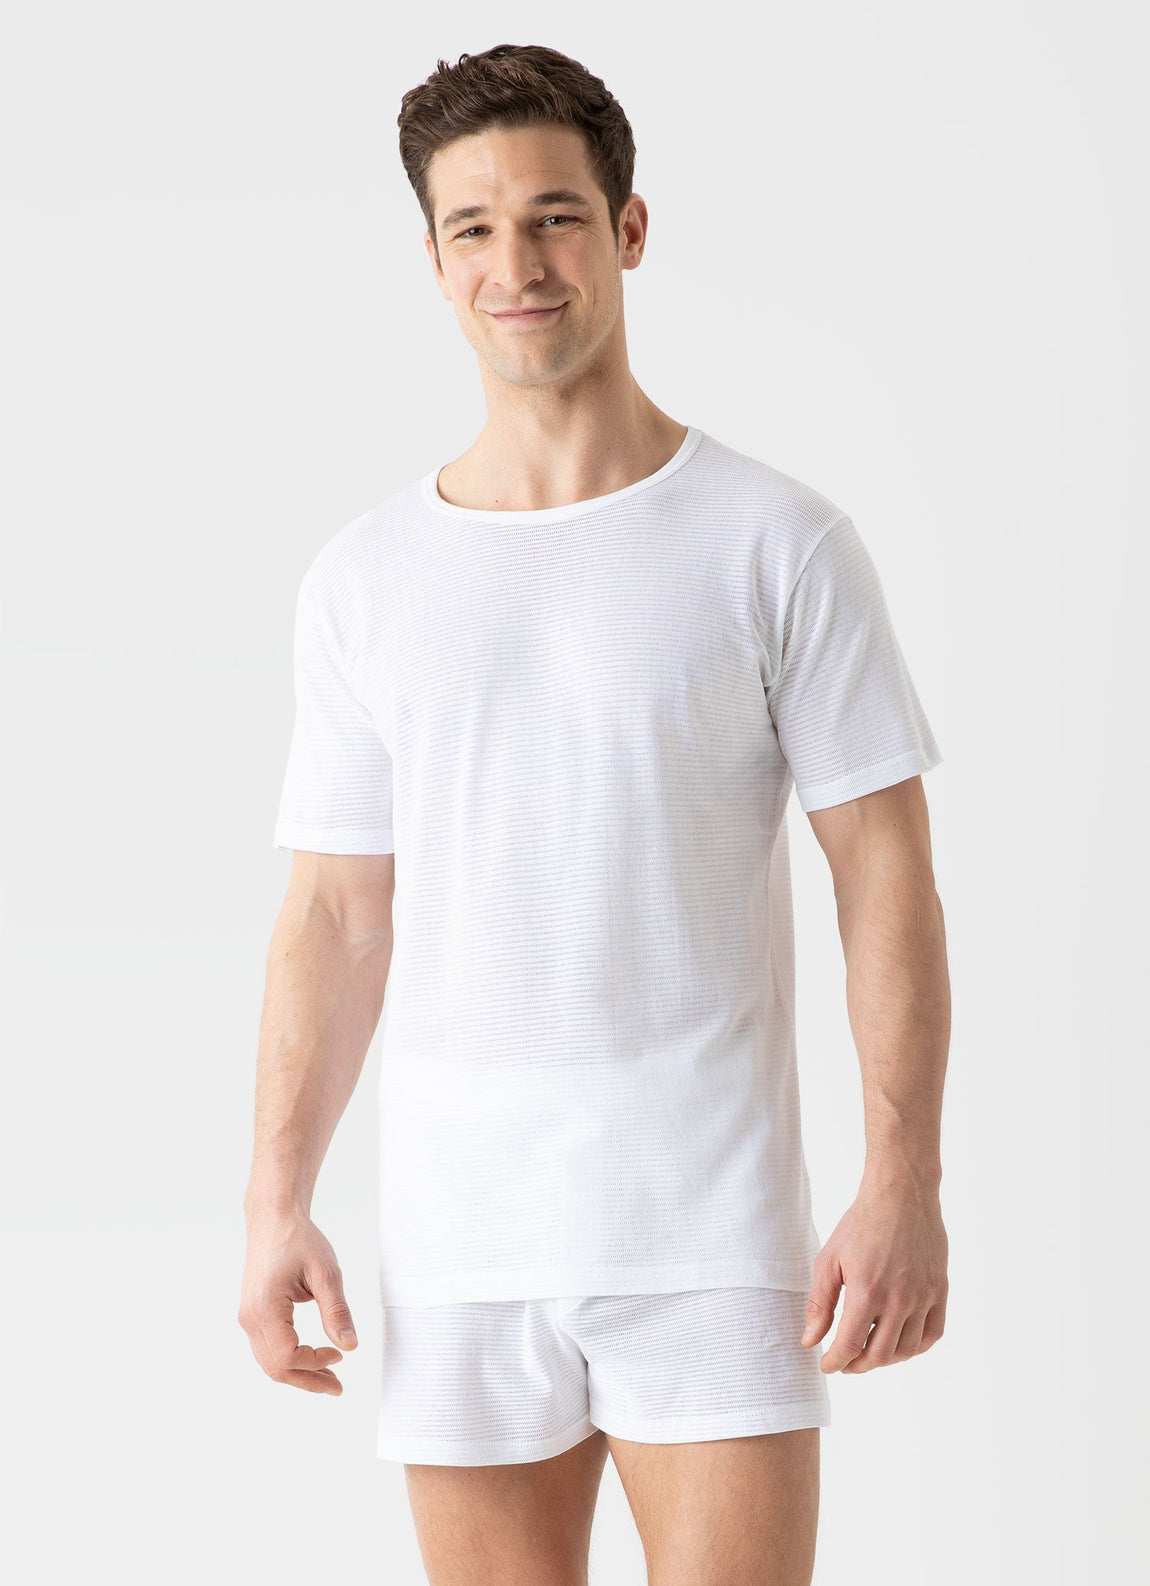 Men's Cellular Cotton Underwear T-shirt in White